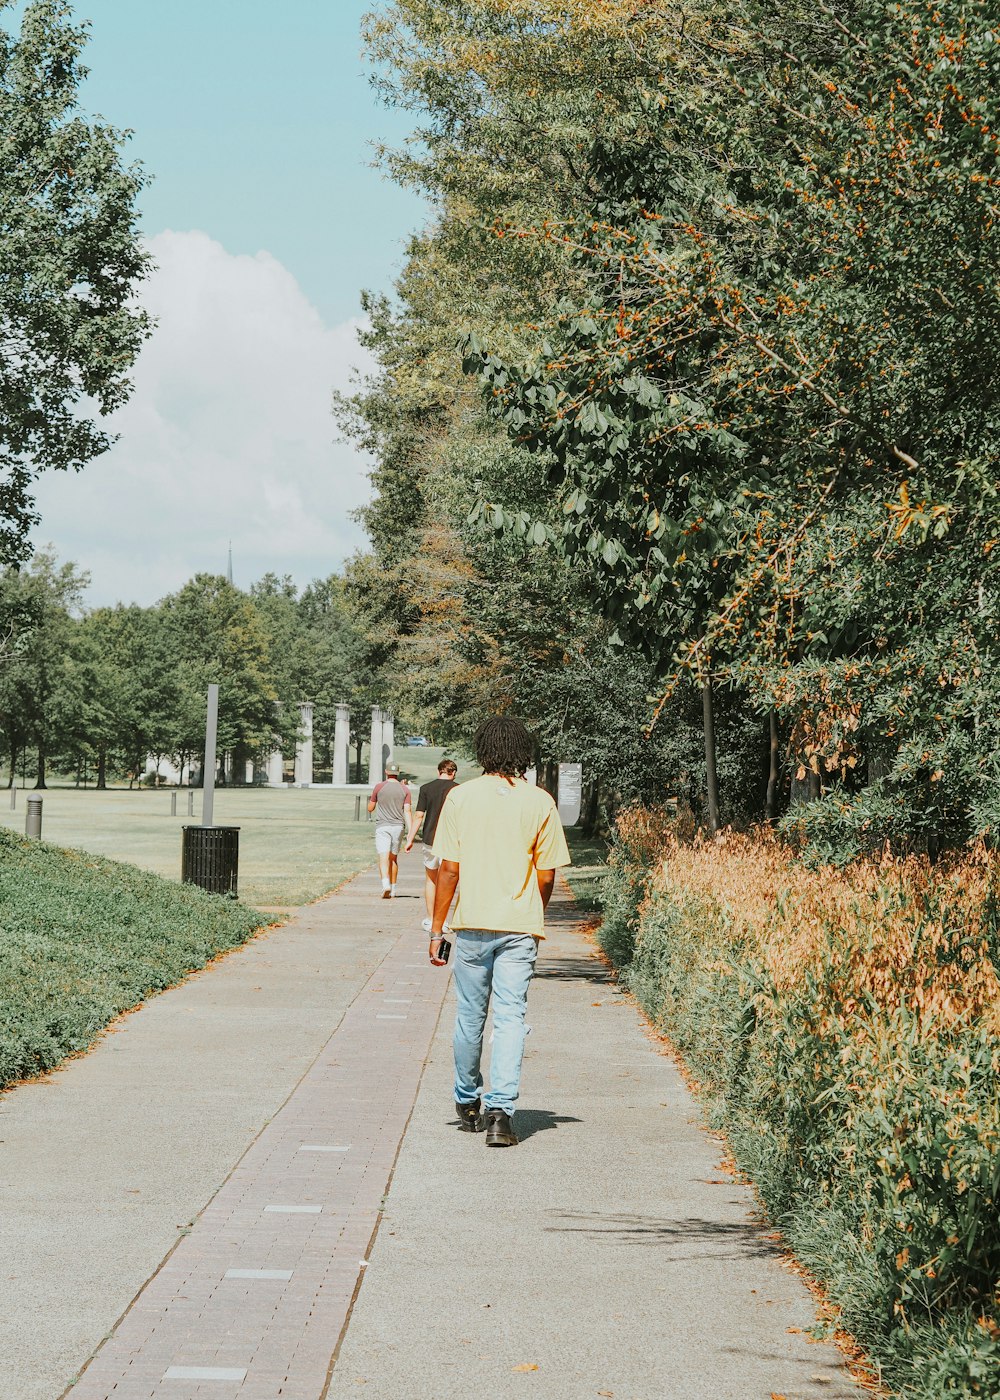 Un hombre caminando por una acera en un parque